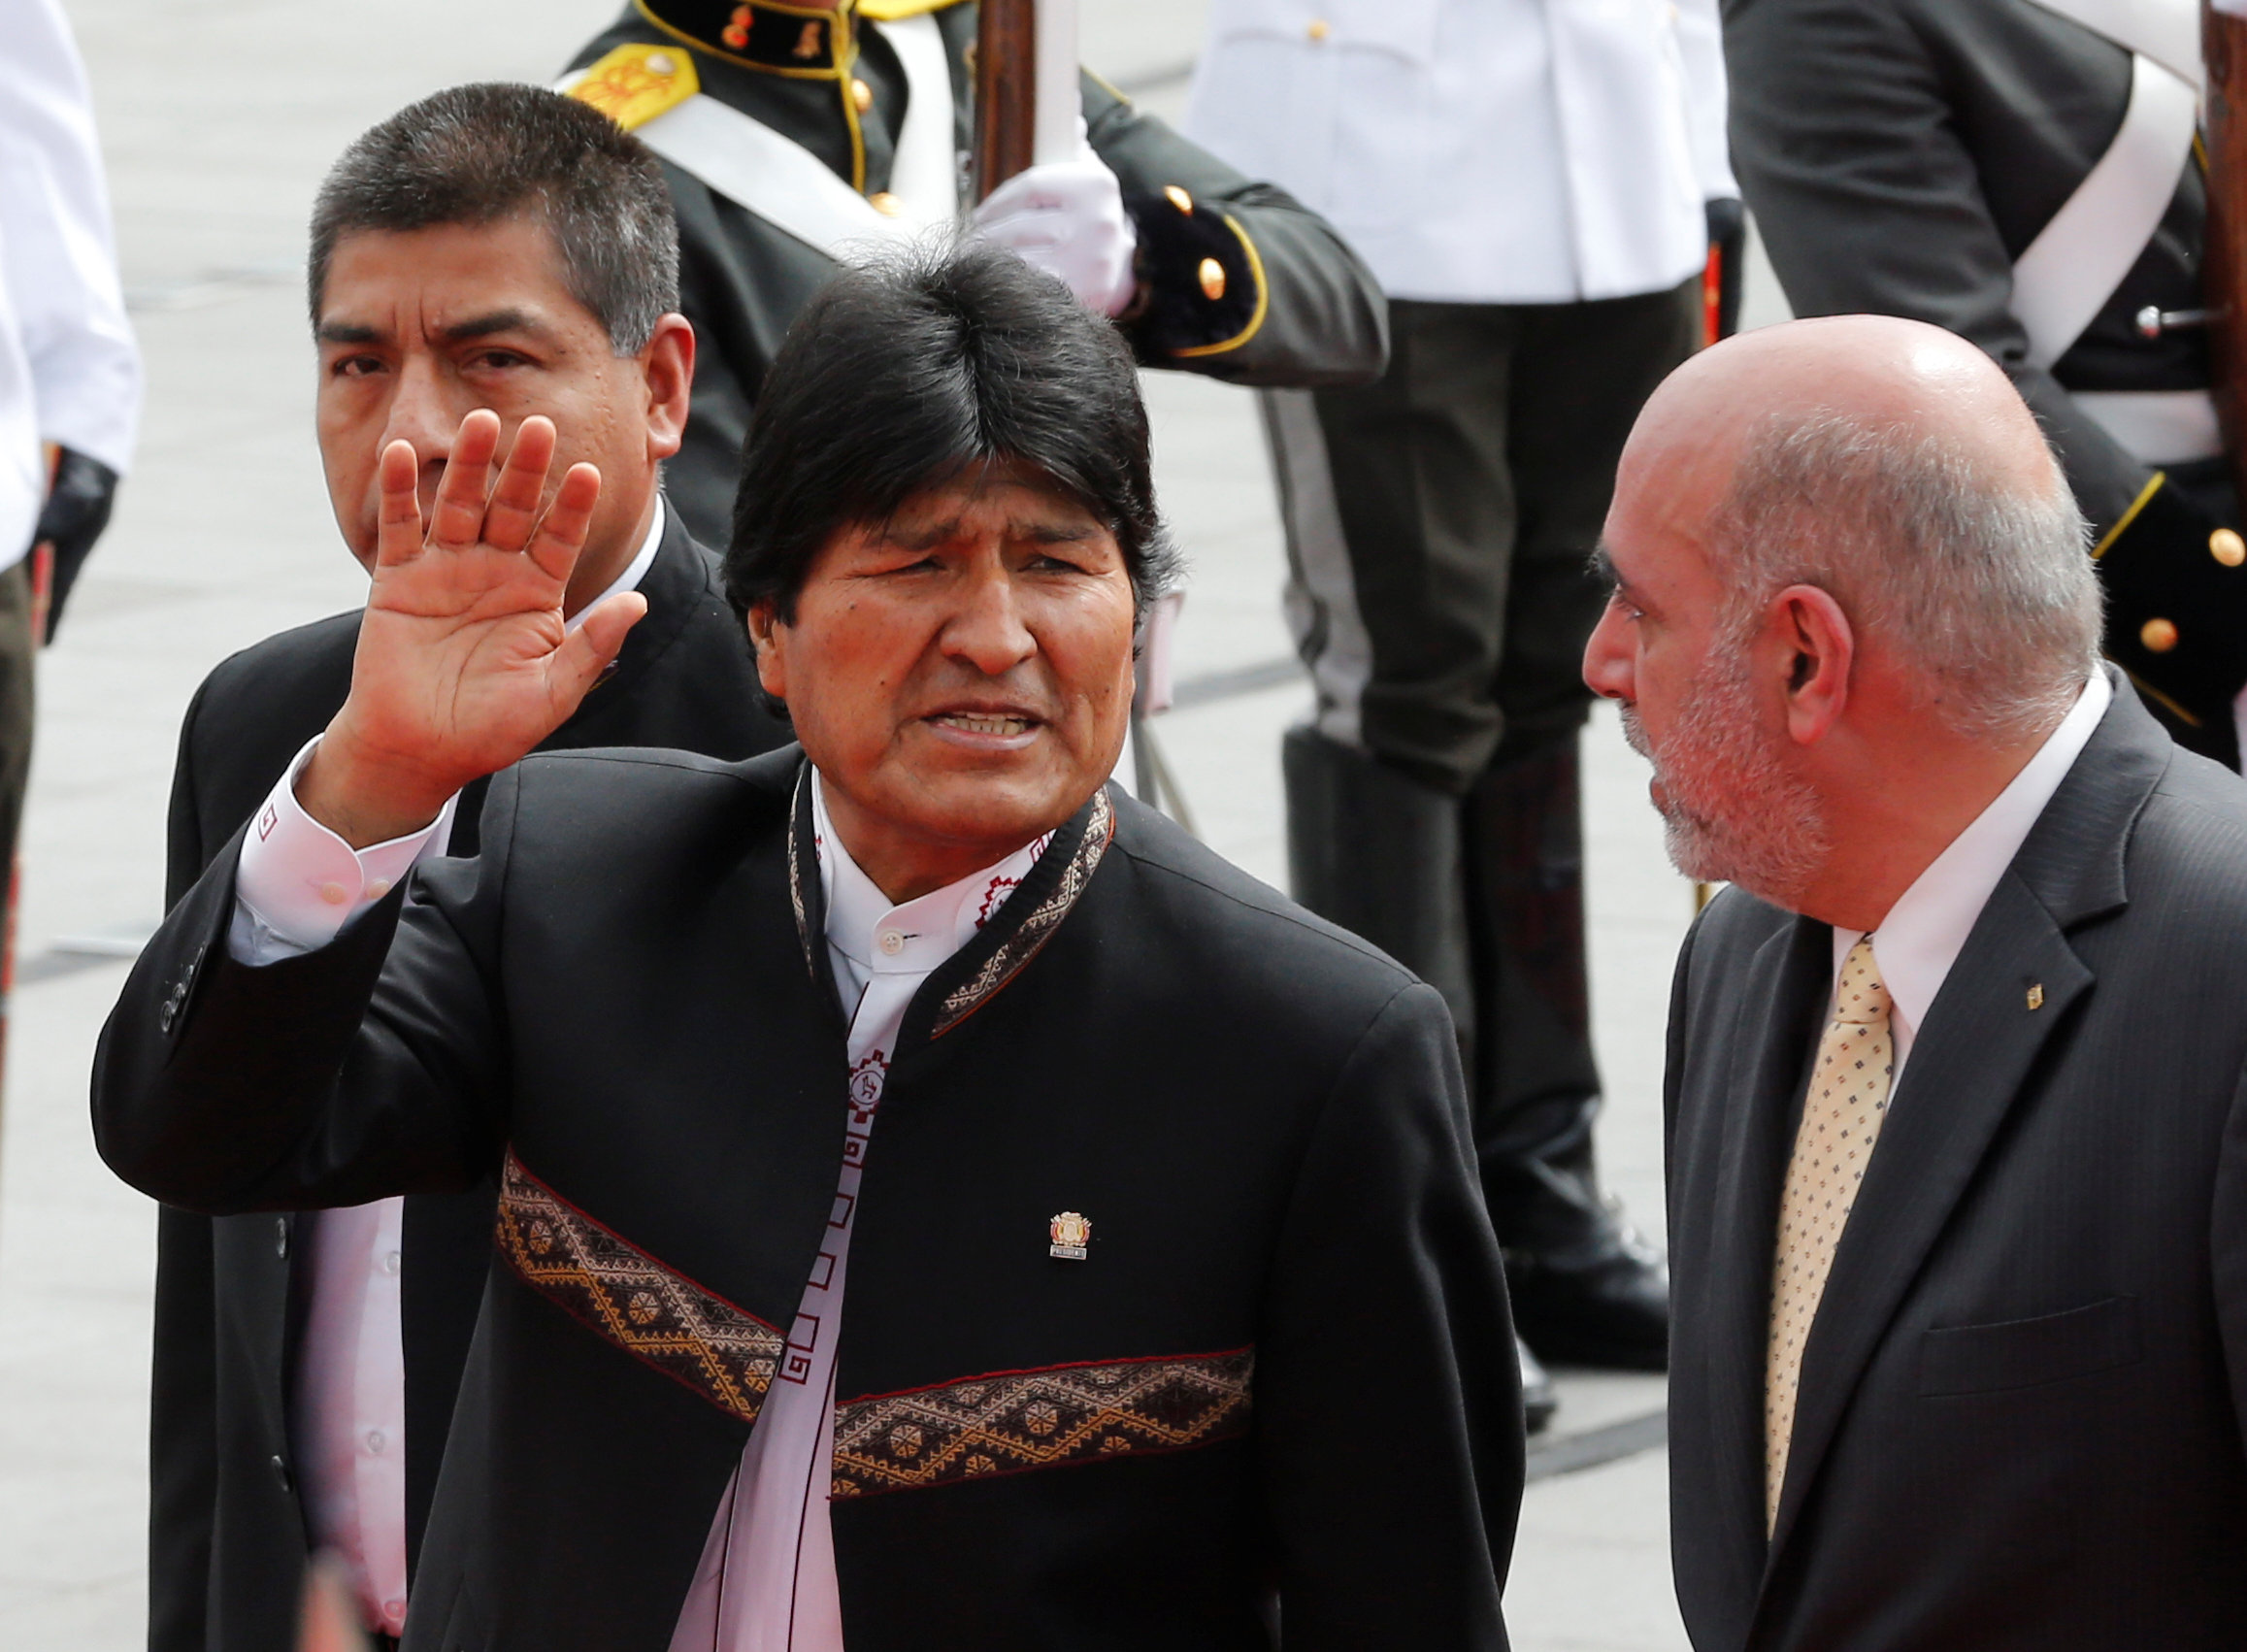 Por petición de los movimientos sociales, Evo Morales aspiraría a su cuarto mandato consecutivo, desde que tomó el poder en 2006.